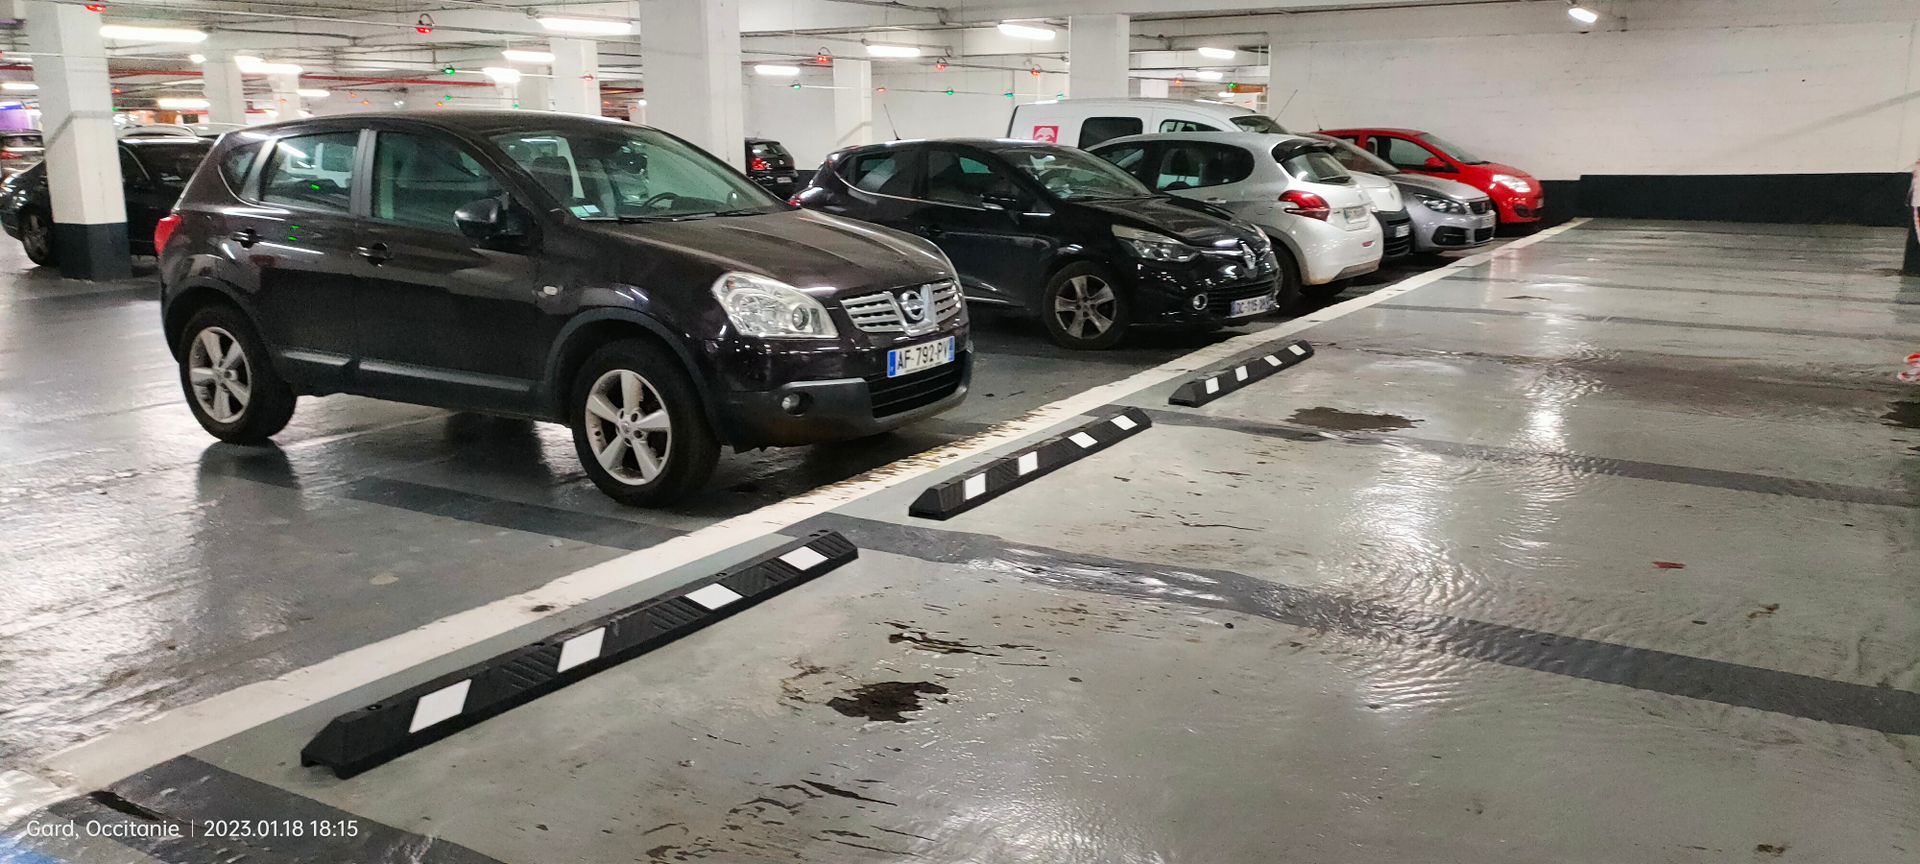 Installation de butées de parking